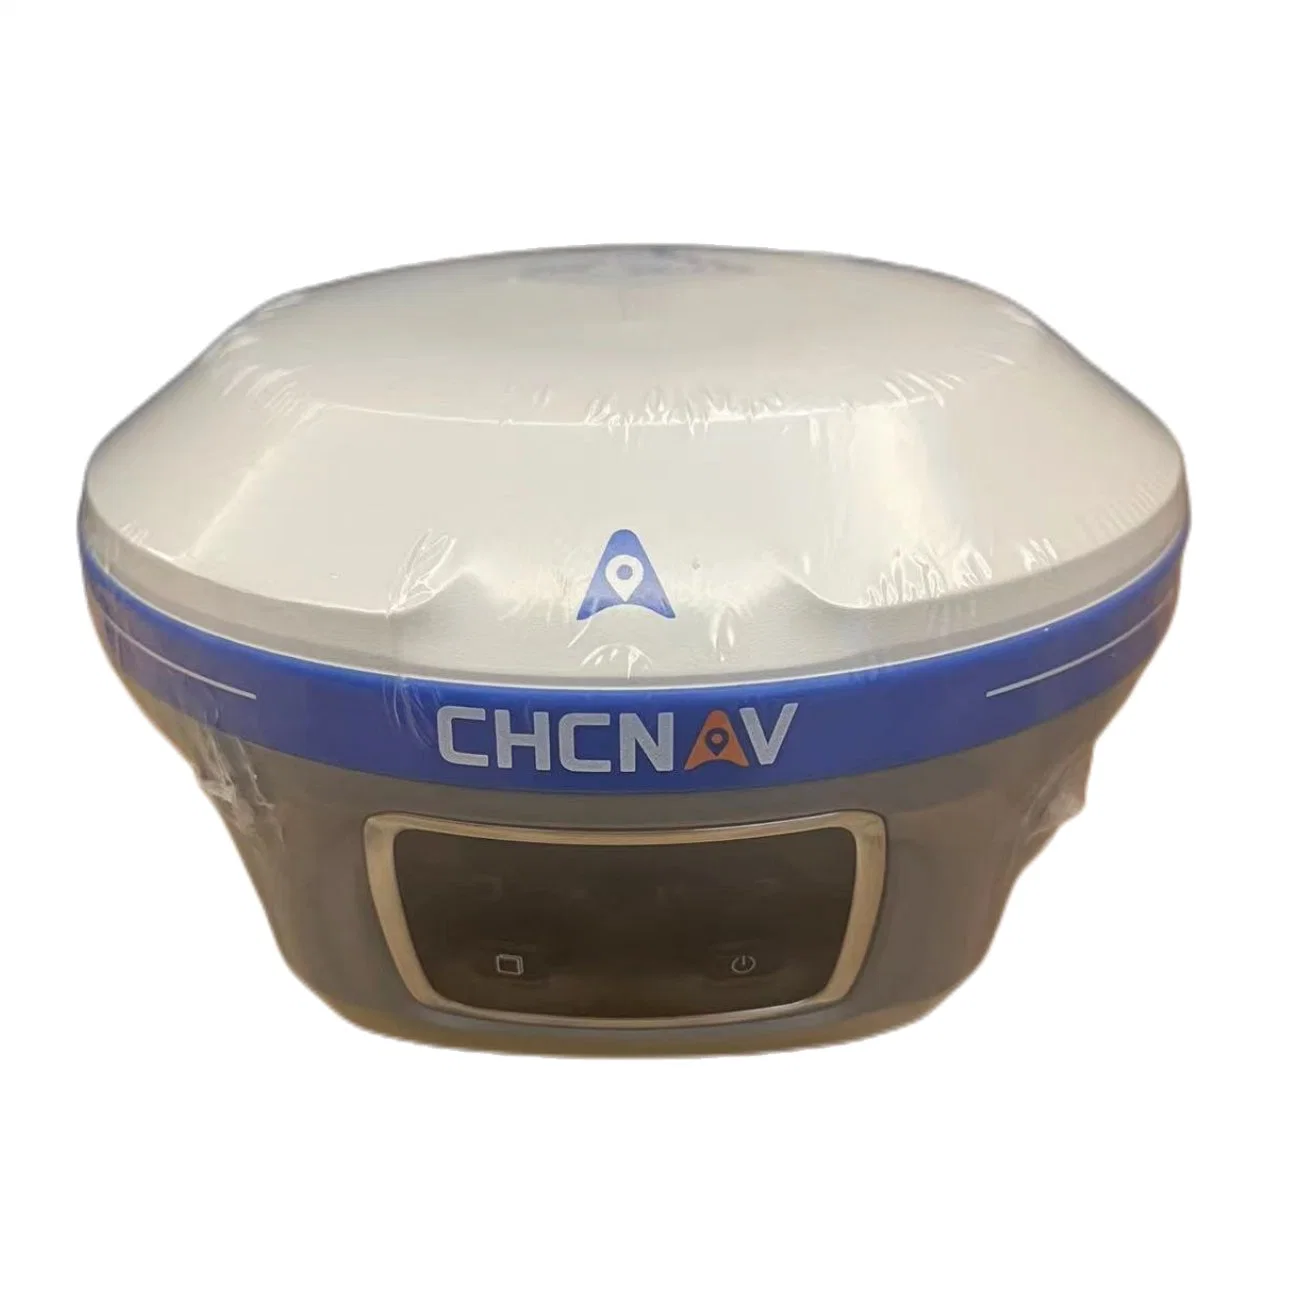 جهاز استقبال GPS عالي الدقة محمول من نوع CHC X11 مسح الأراضي بنظام GNSS RTK للجهاز